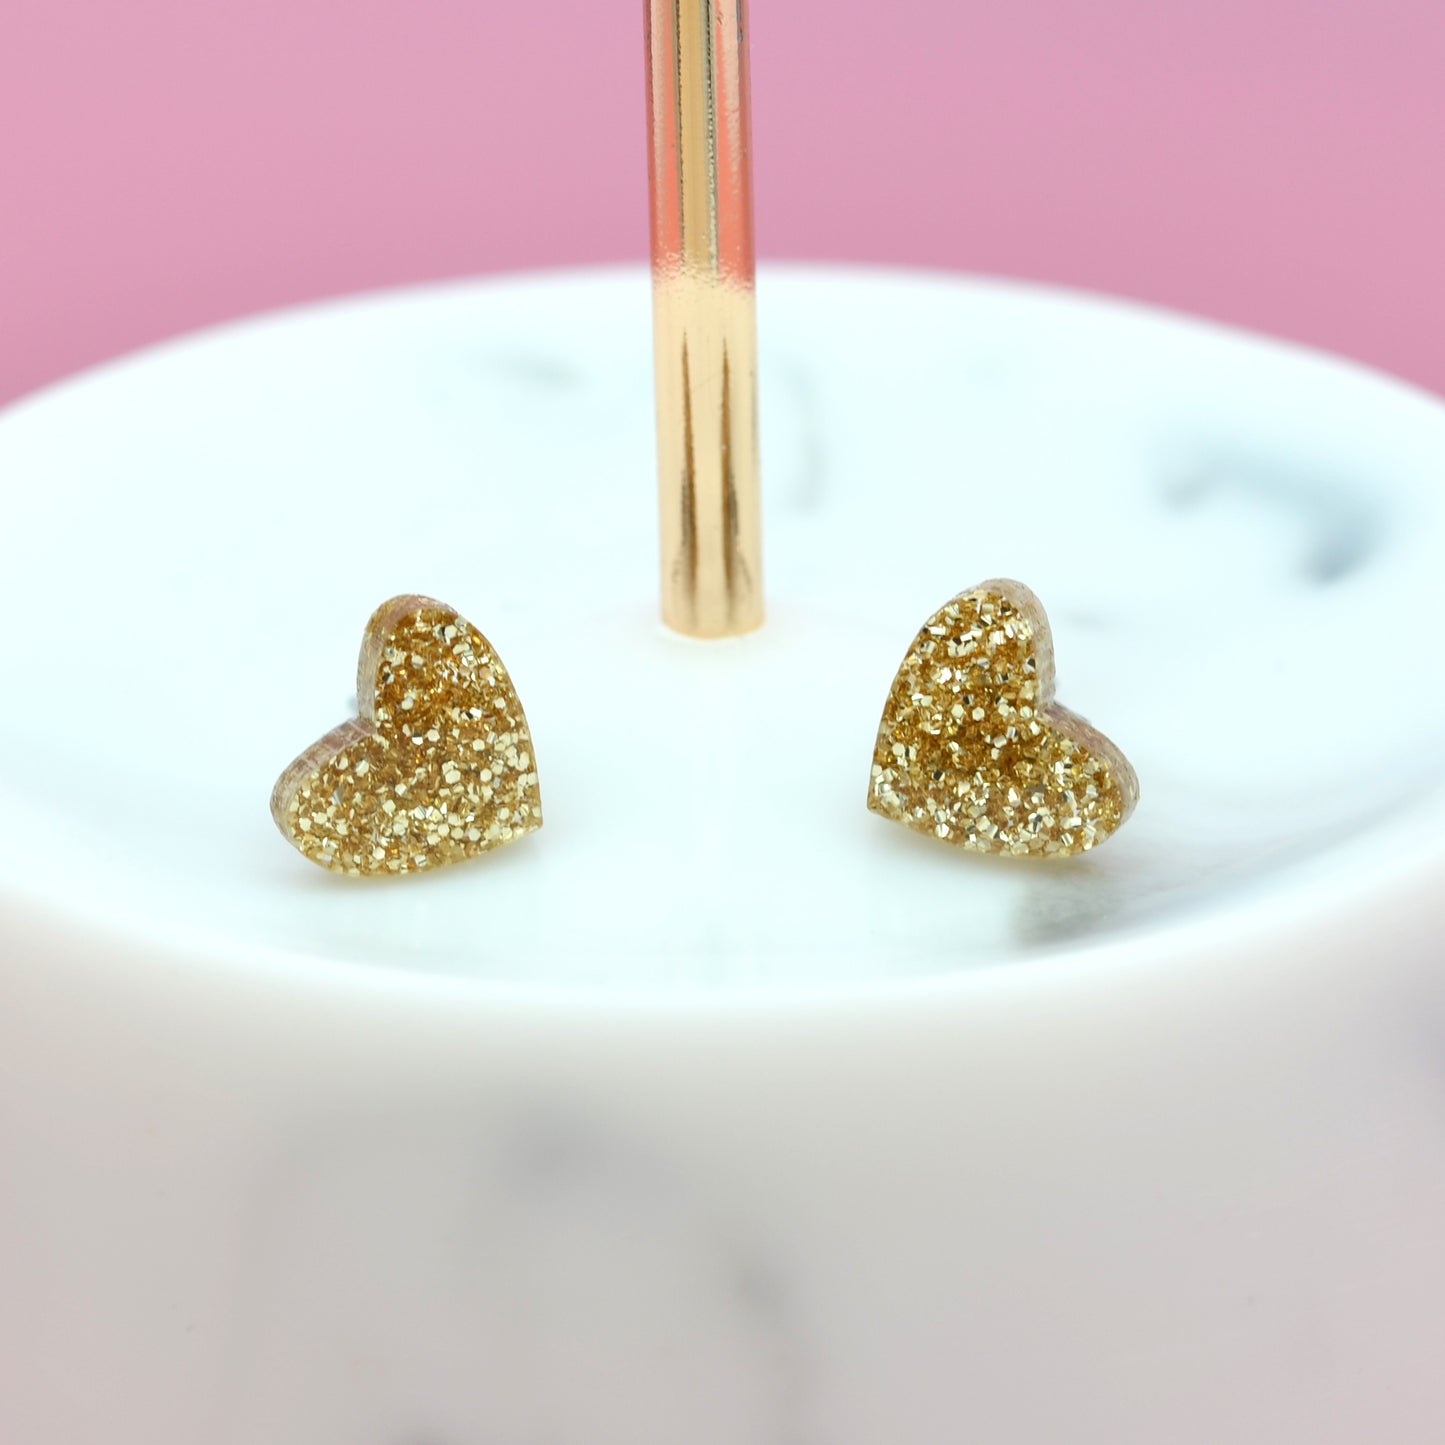 NEW Mini Laser Cut Glitter Acrylic Heart Stud Earrings